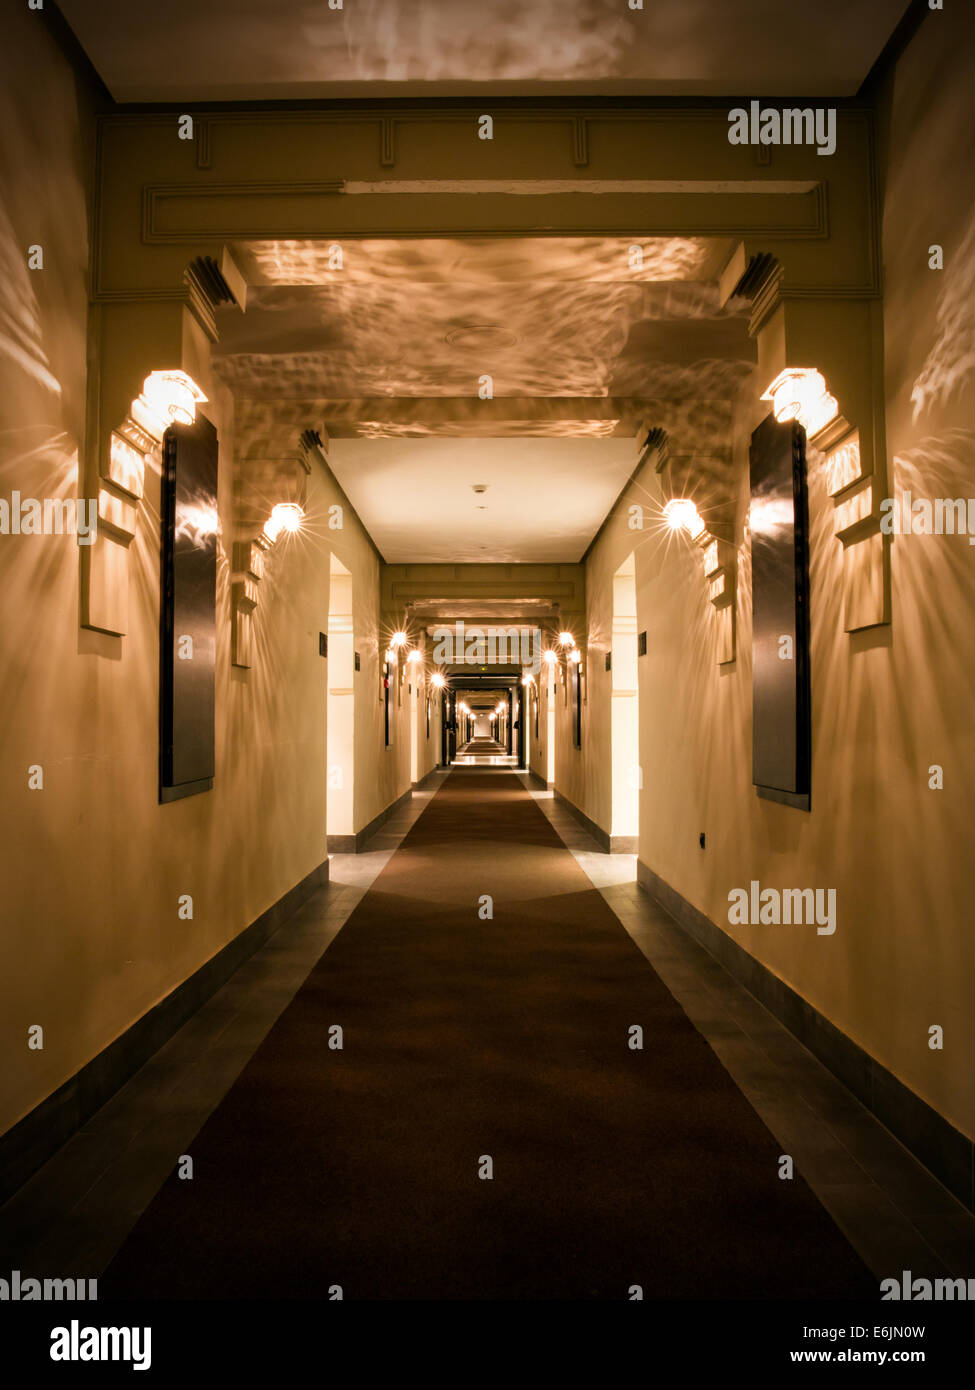 Hôtel moderne dans le corridor vide ton brun Banque D'Images